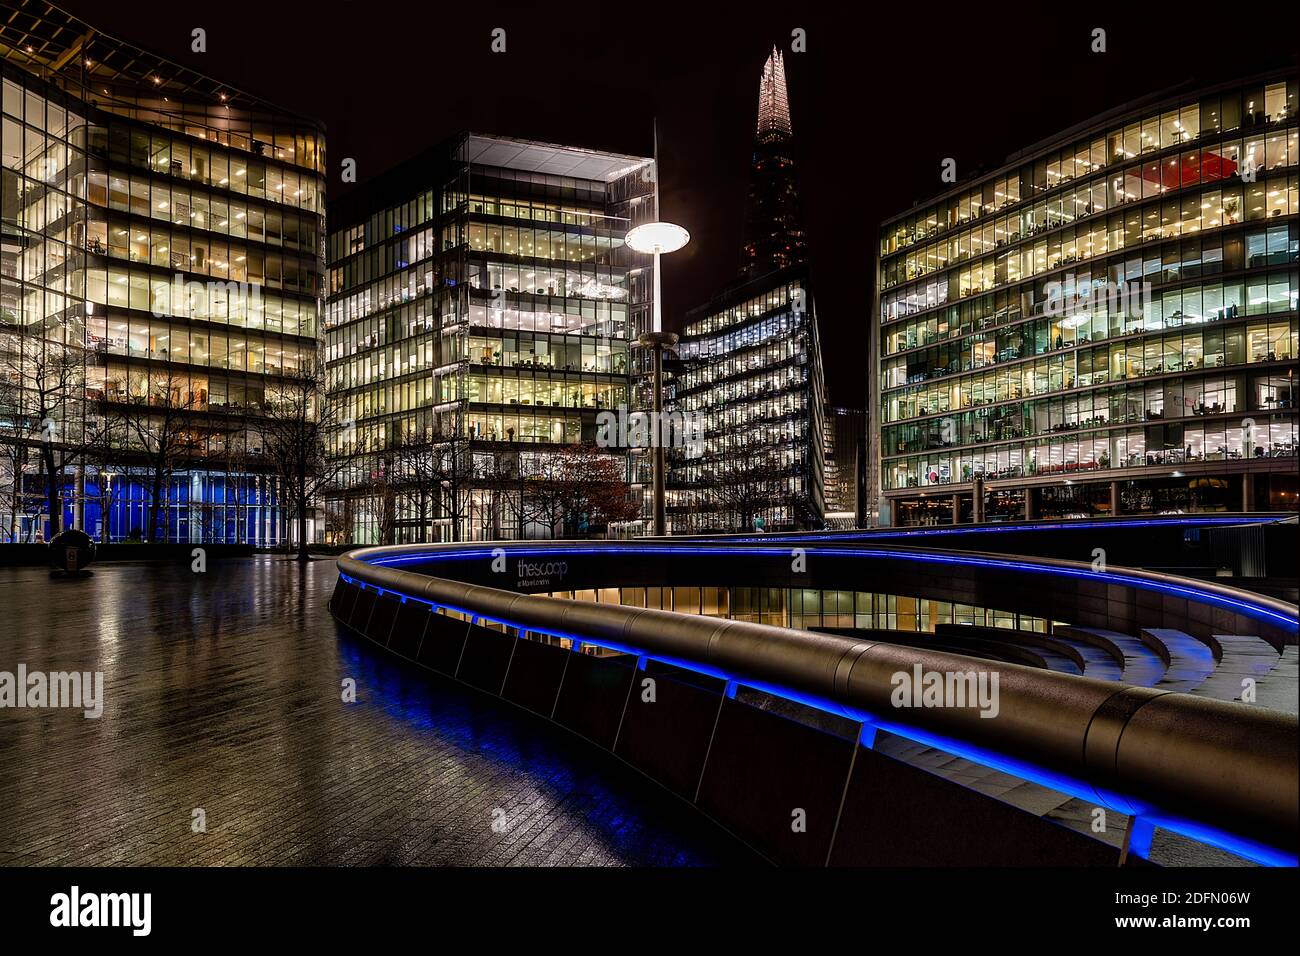 Londres, Reino Unido - Enero 2020: El Shard y el Scoop en una noche húmeda y oscura Foto de stock